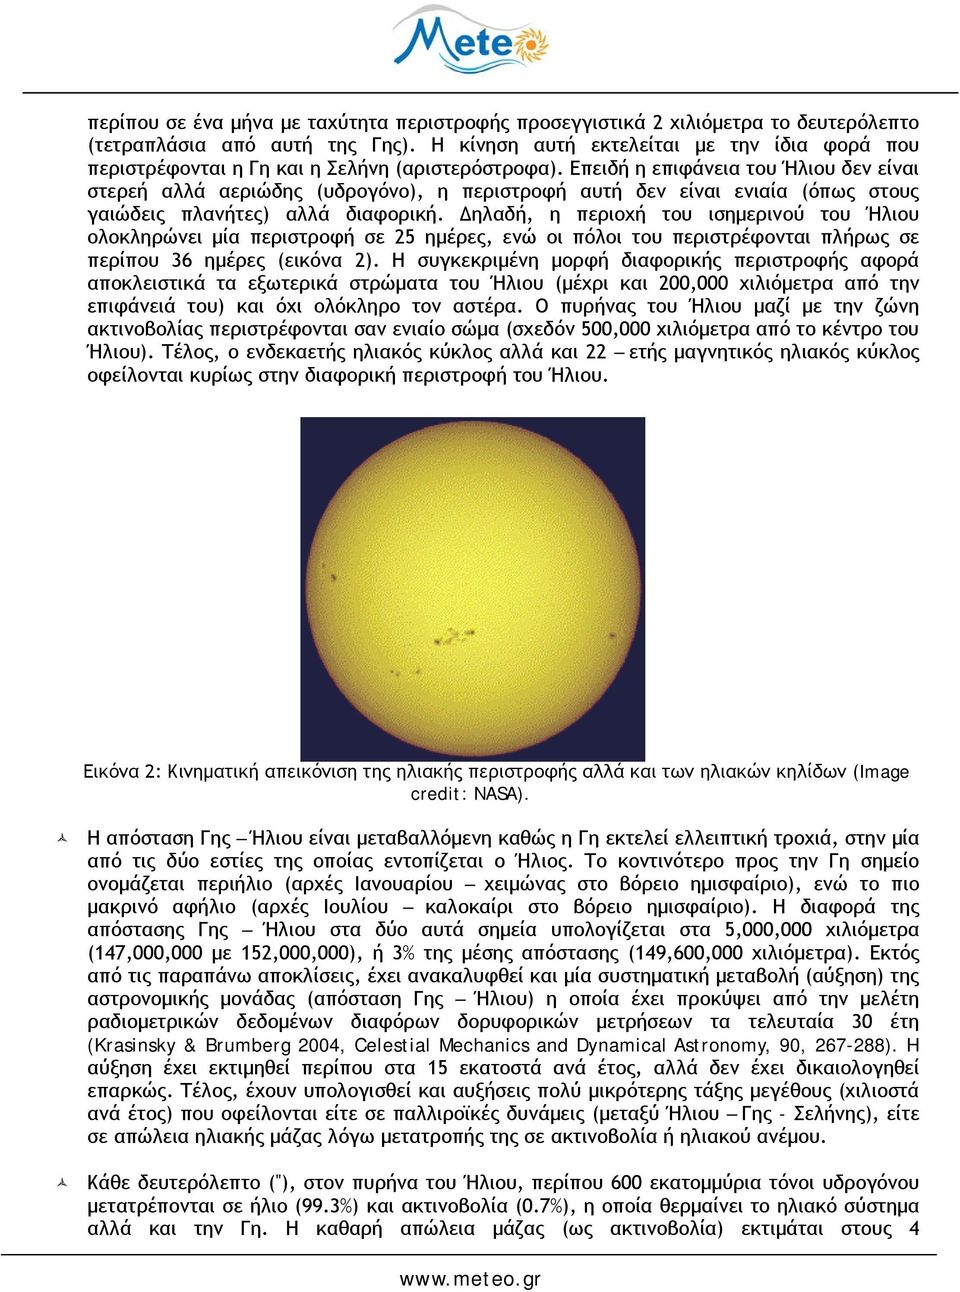 Επειδή η επιφάνεια του Ήλιου δεν είναι στερεή αλλά αεριώδης (υδρογόνο), η περιστροφή αυτή δεν είναι ενιαία (όπως στους γαιώδεις πλανήτες) αλλά διαφορική.